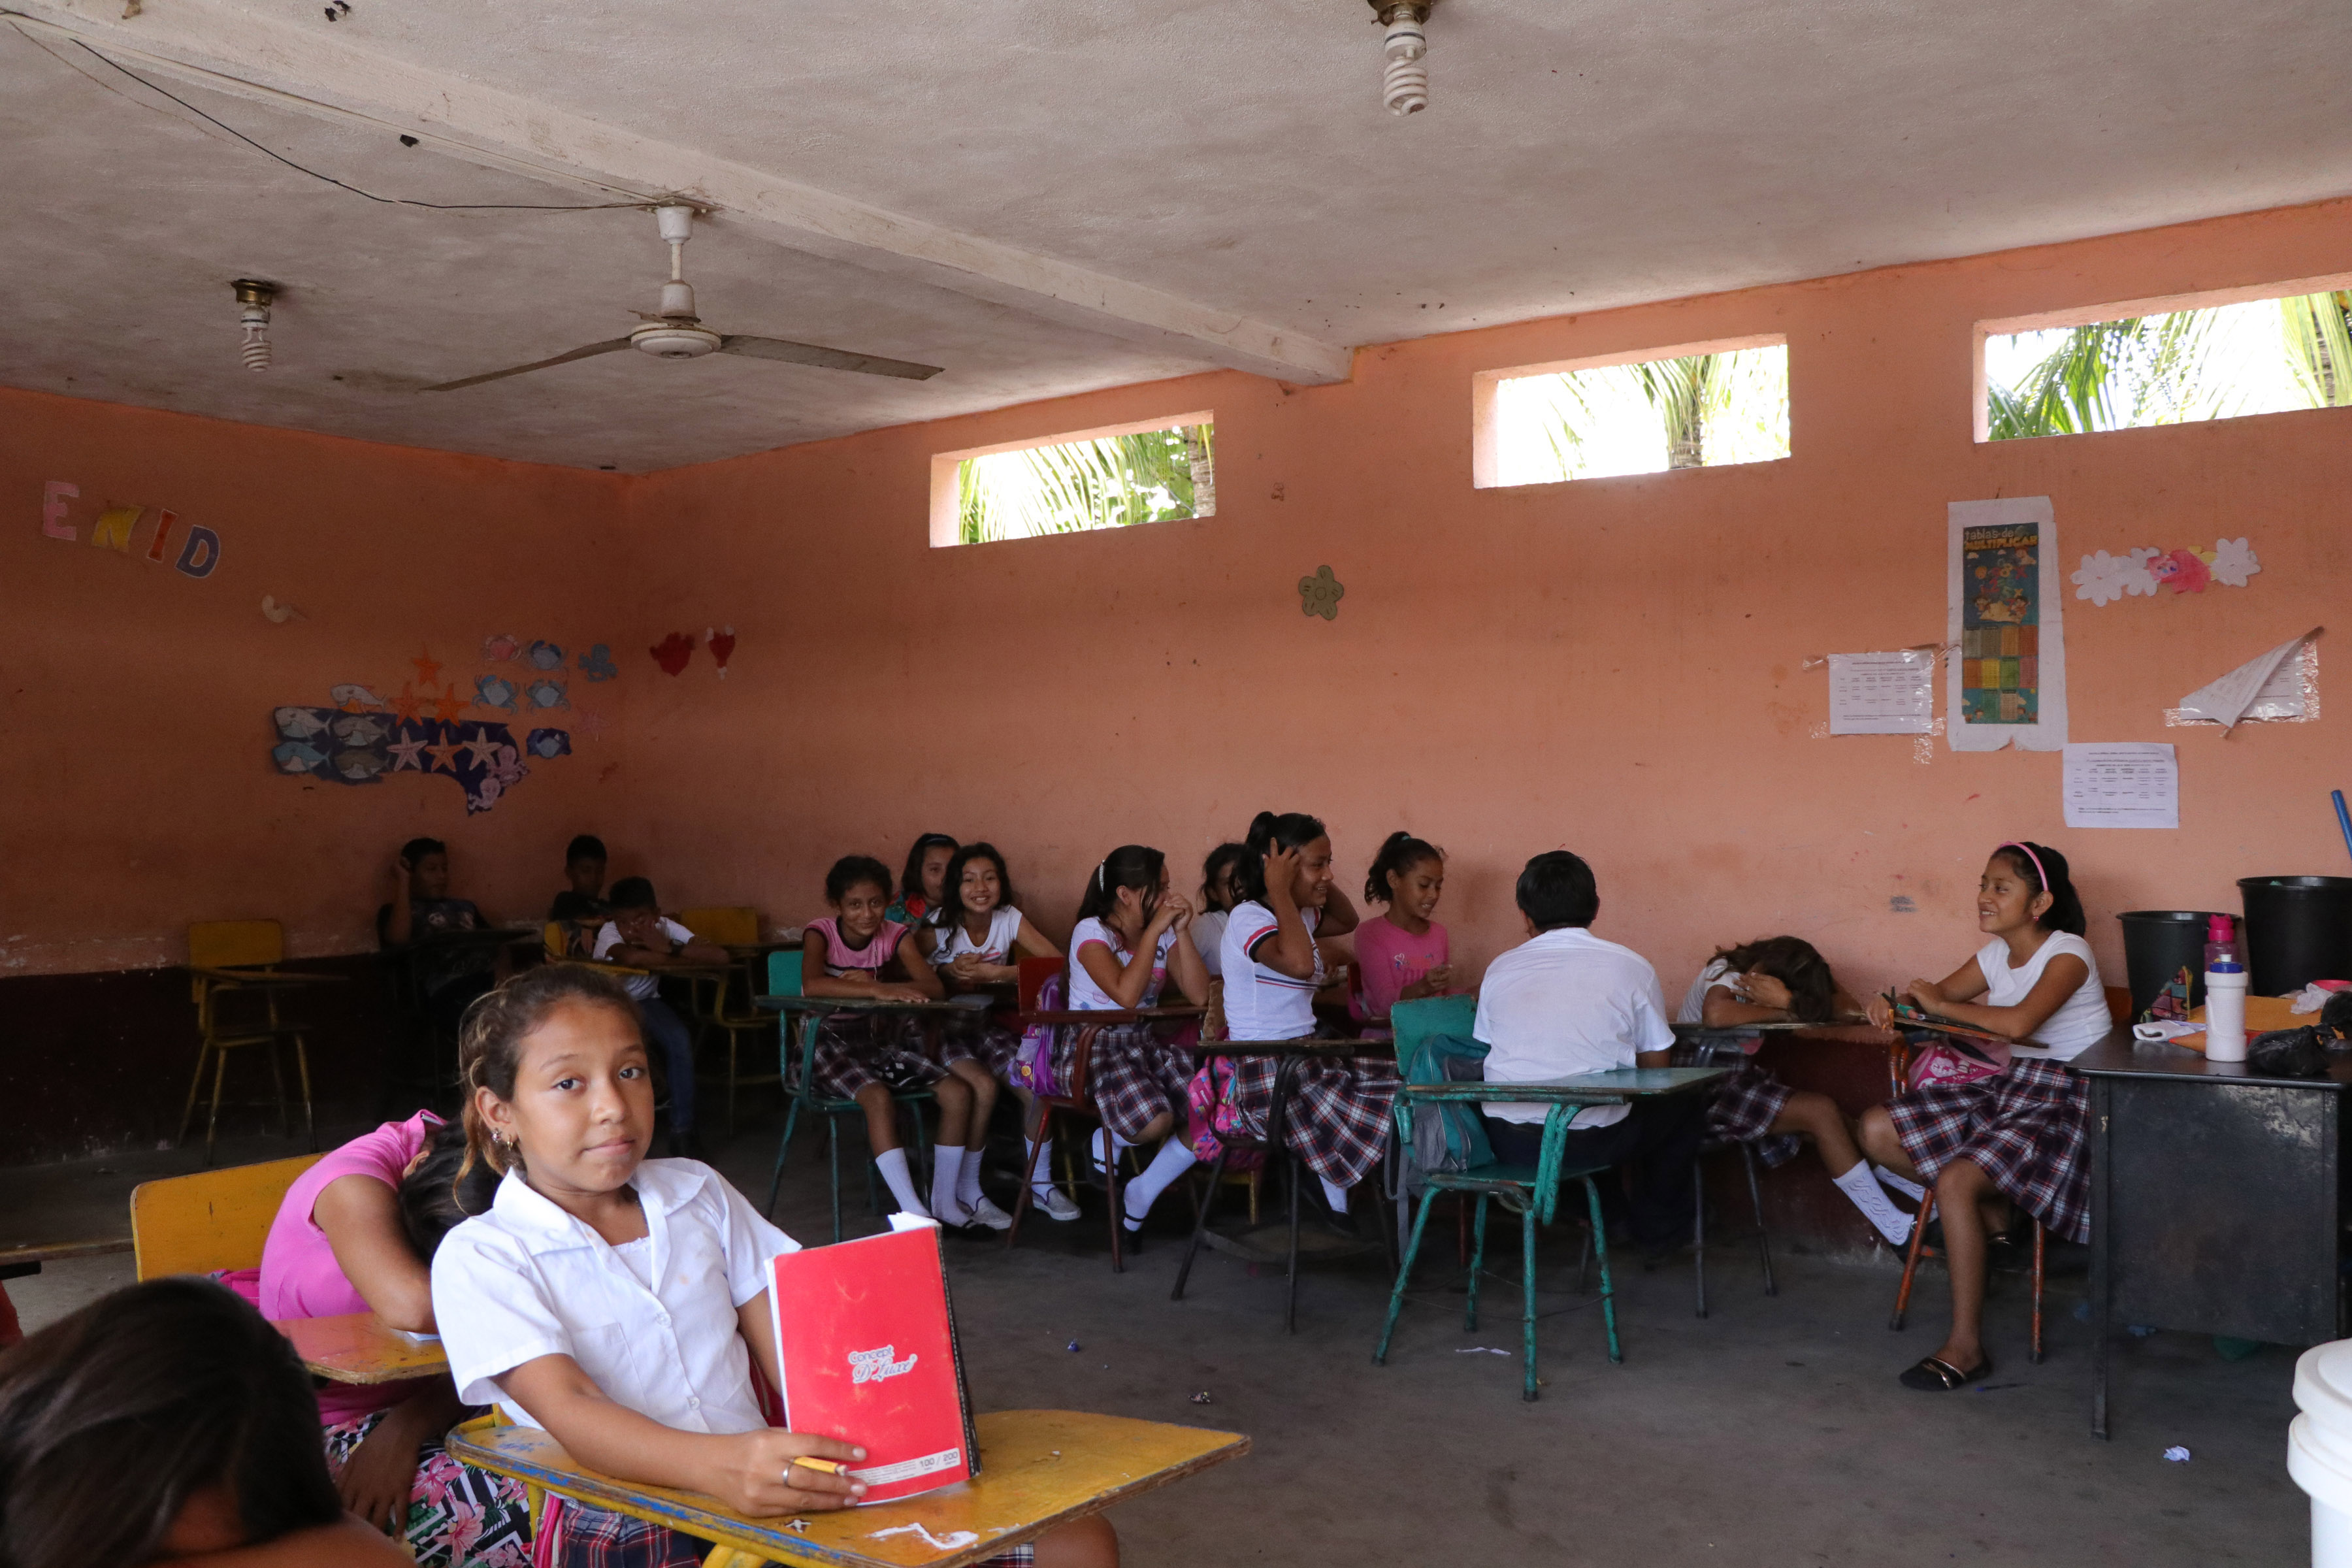 Los estudiantes son acomodados a los costados del aula para evitar peso en el centro. (Foto Prensa Libre: Carlos Paredes)